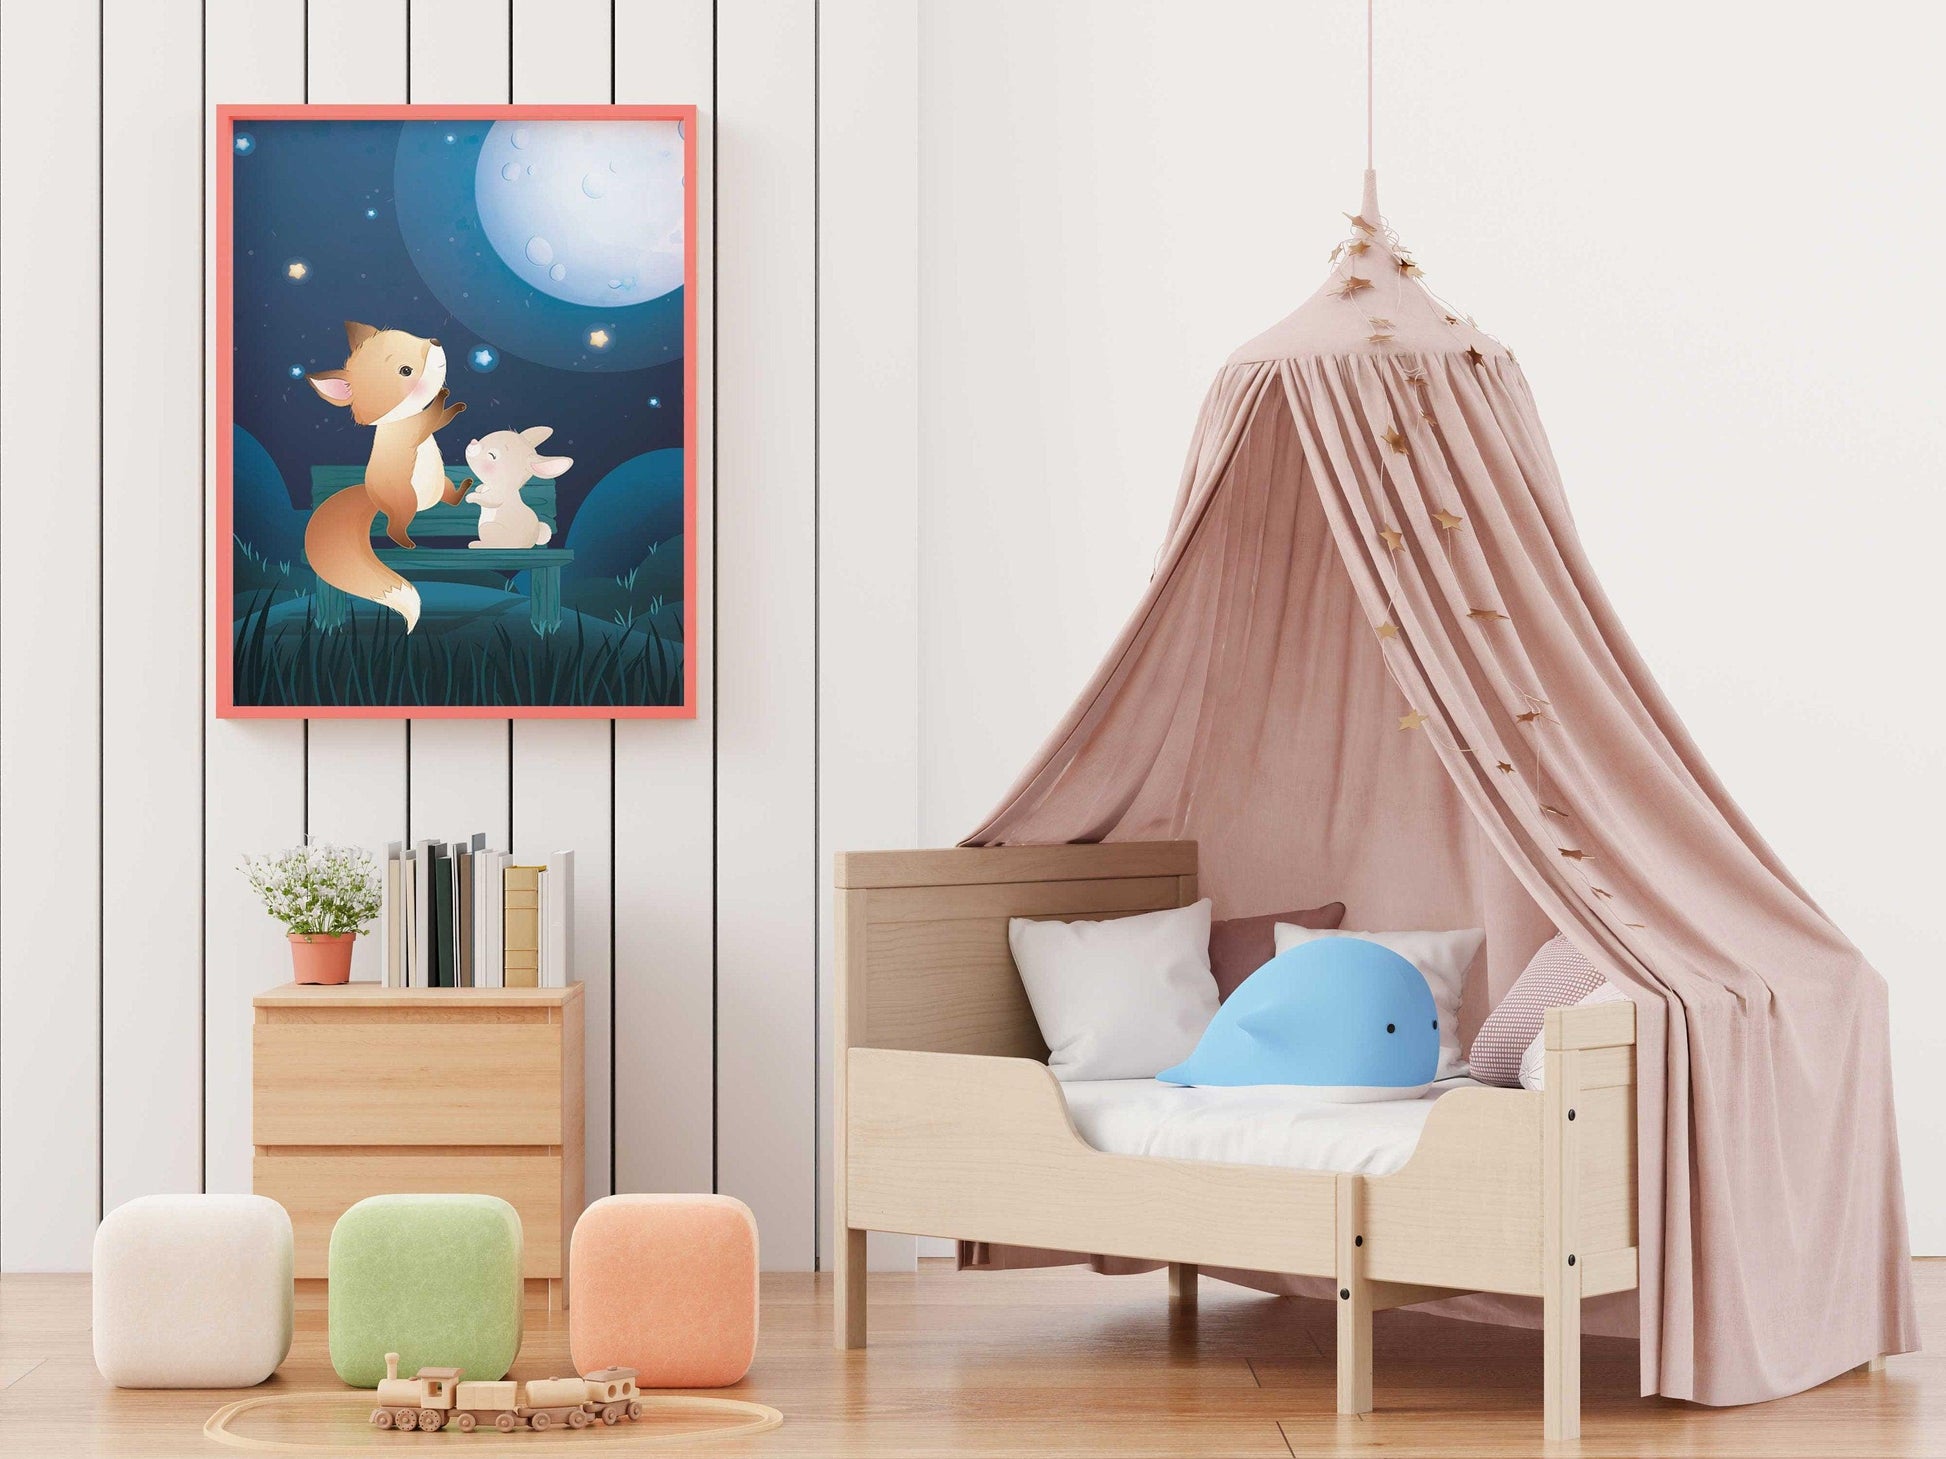 Affiches Renard et Lapin rêve illustration - chambre enfant bébé - Décoration enfant - Idée cadeau - Thème animaux - format A4 ou A3 - Imagine.affiche